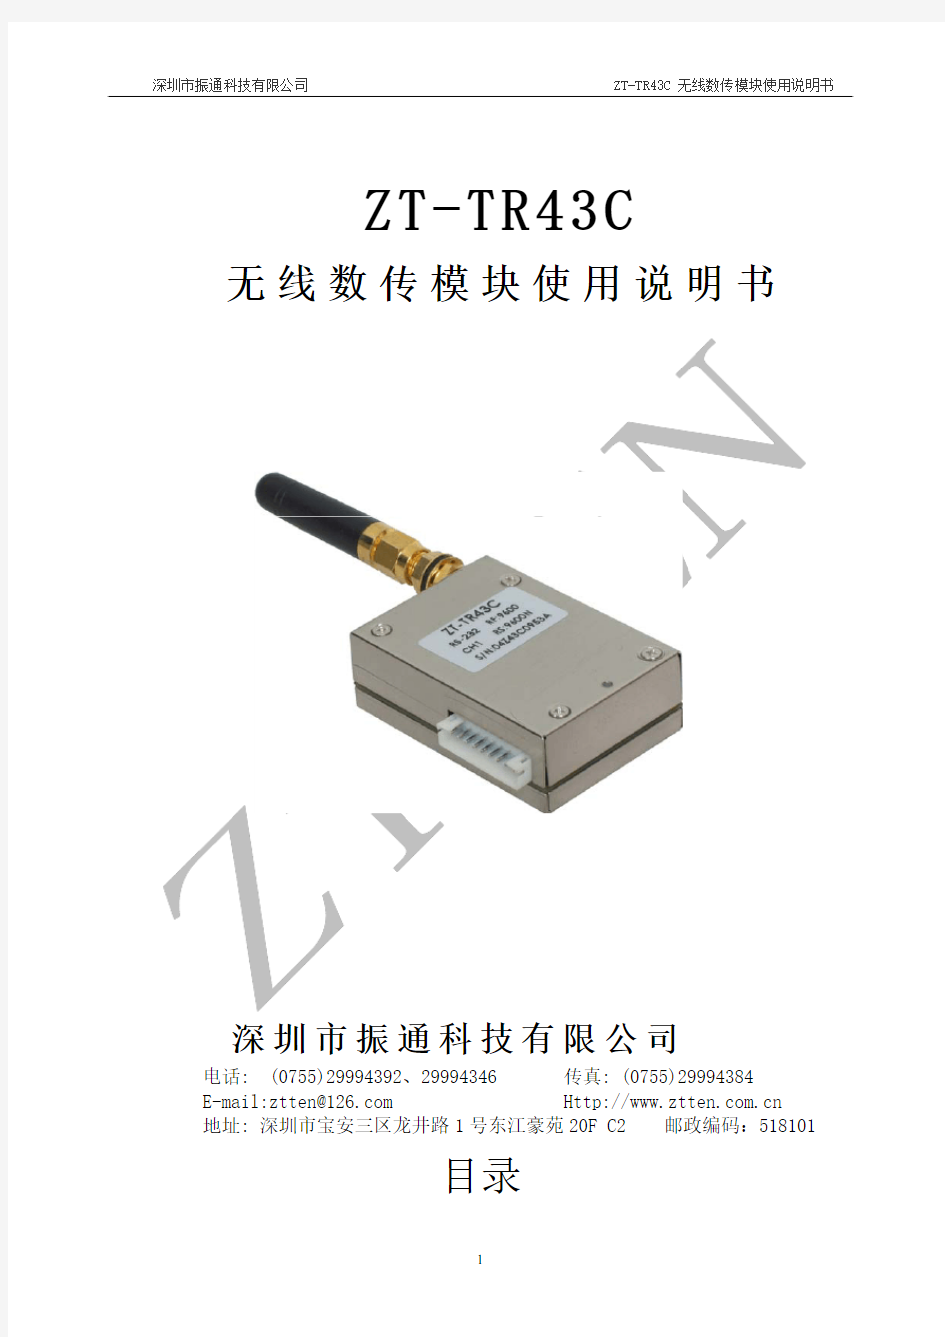 ZT-TR43C无线数传模块使用说明书